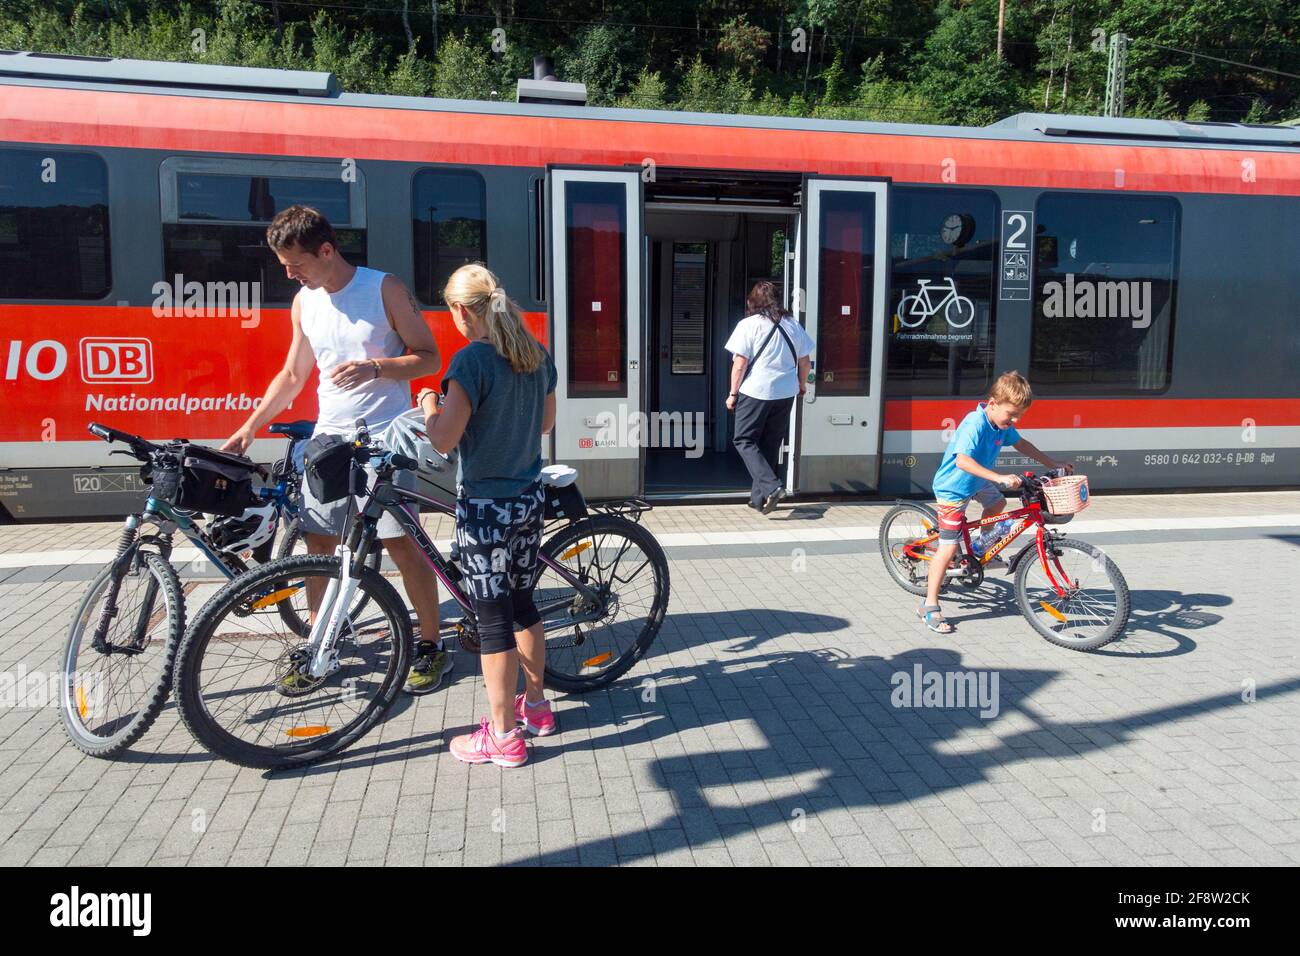 Famille avec vélo voyageant en train régional, homme femme enfant Saxe Allemagne chemin de fer Banque D'Images